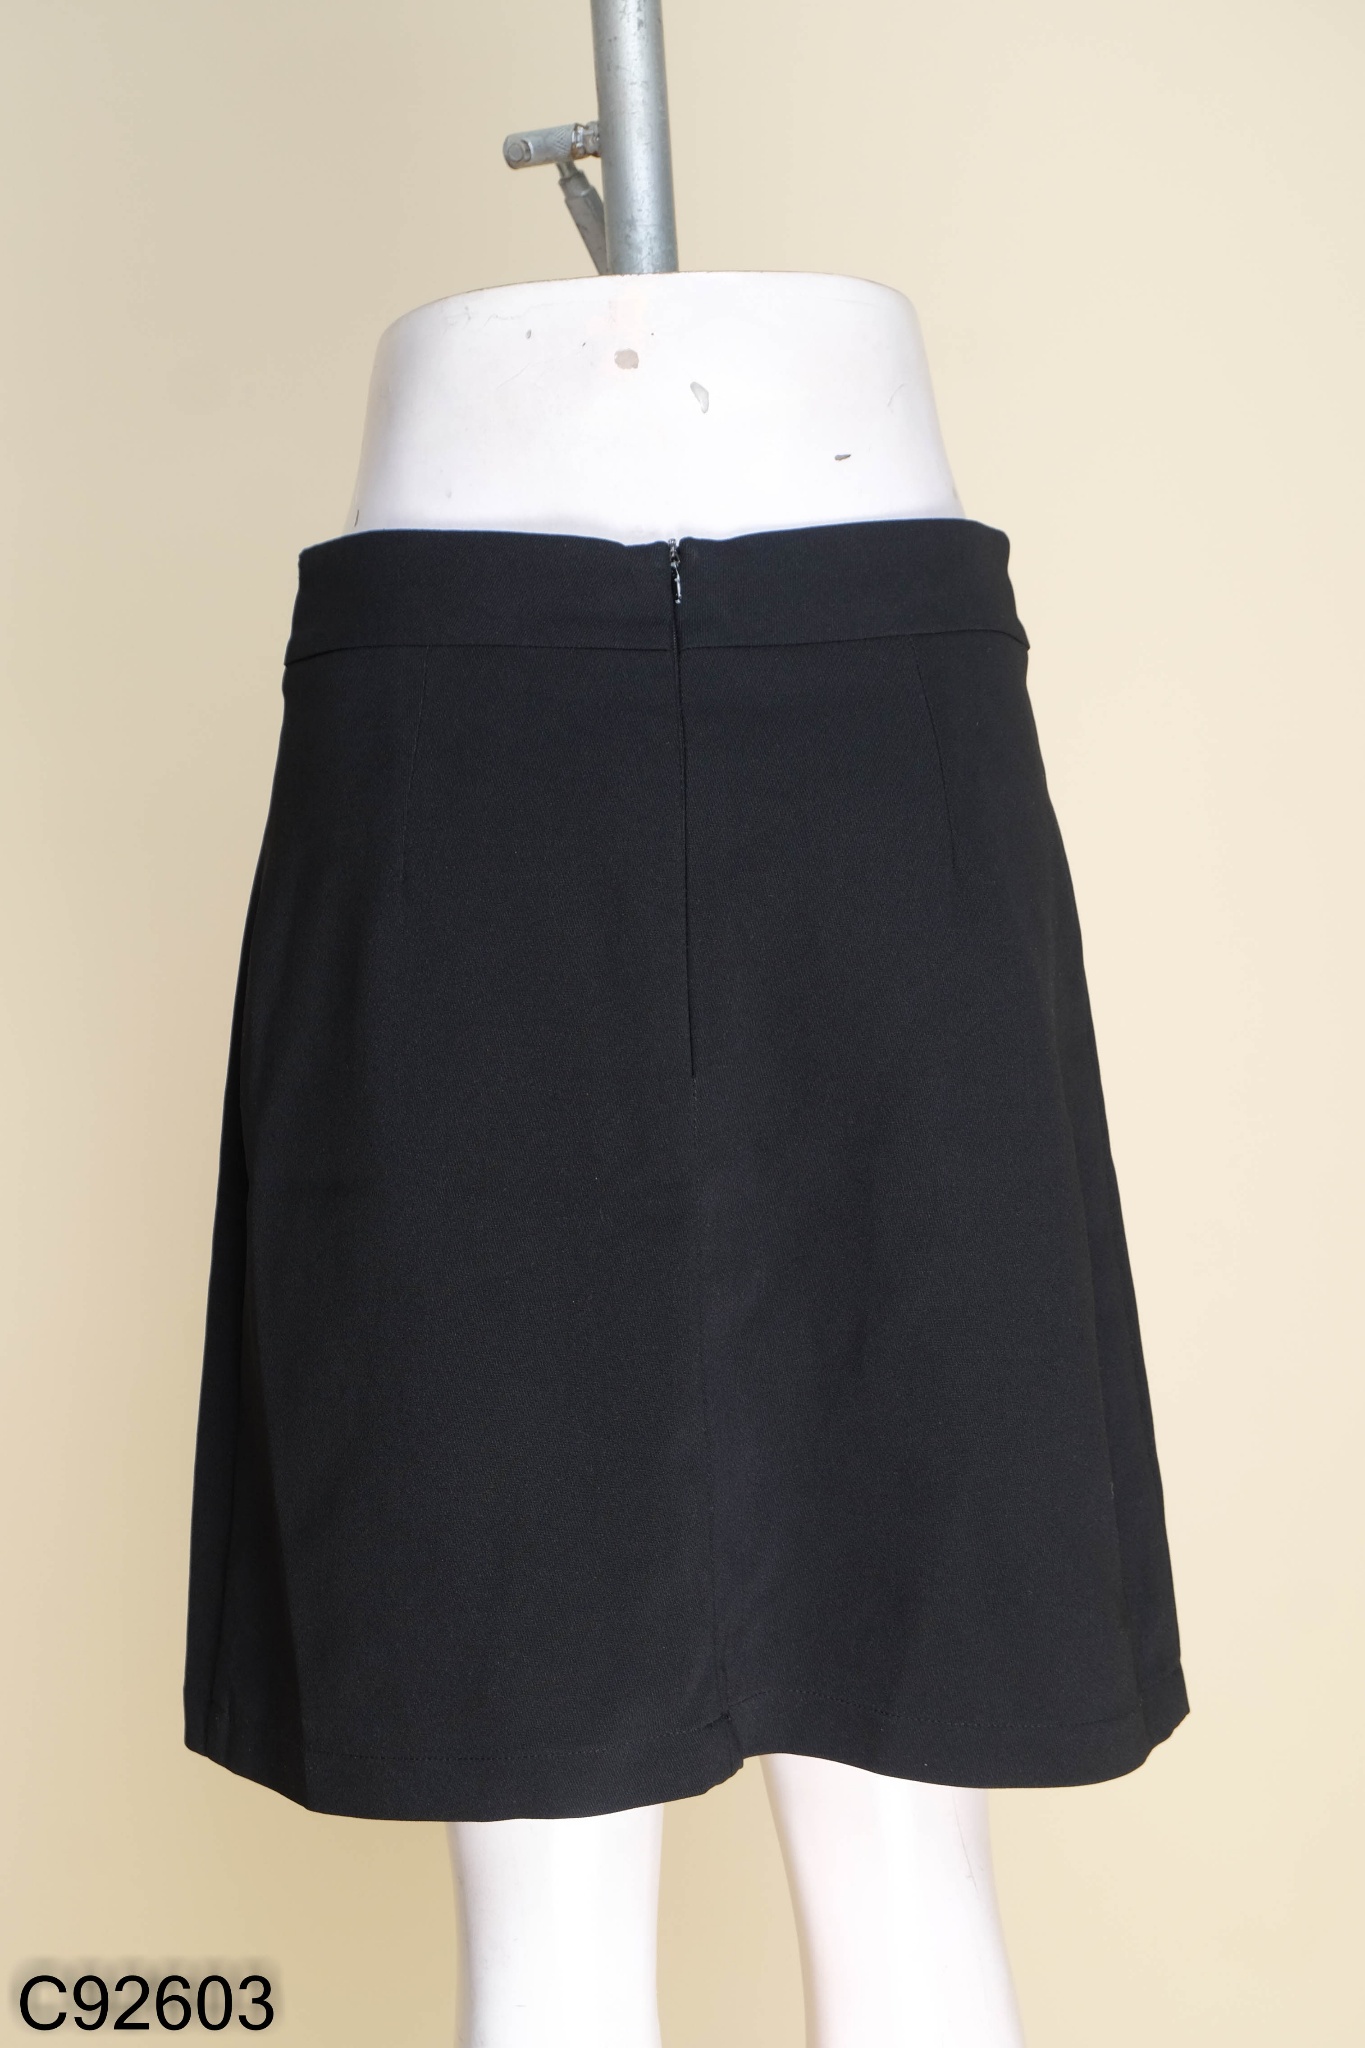 Chân váy tennis ngắn chữ a xếp ly dáng xòe vải mềm màu nâu đen - Chân váy  chữ a lưng cao công sở mặc đi làm với áo sơ mi |